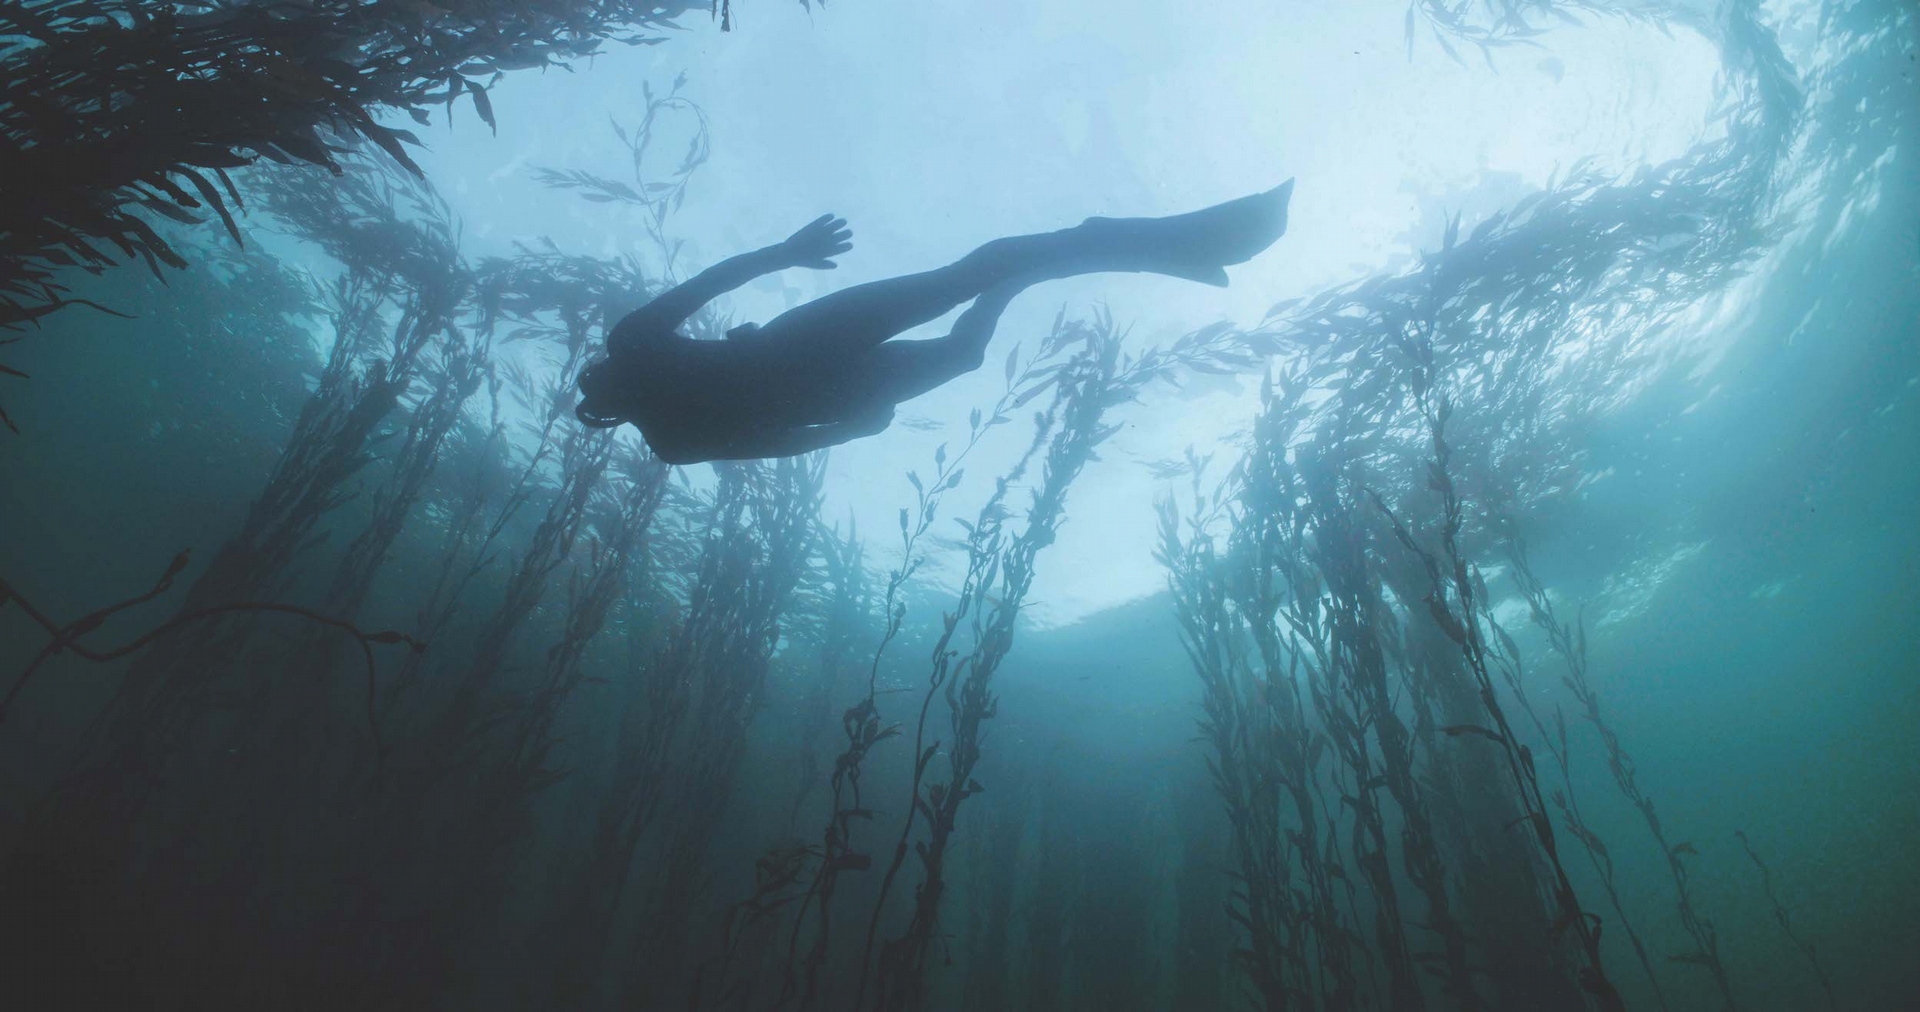 高鹽高壓的深海環境，反而孕育出可生長到超過60公尺高且生命力強韌的巨藻，隨著洋流擺盪搖曳，在海底形成一整片如夢似幻的叢林奇景。（圖片由海洋拉娜提供）